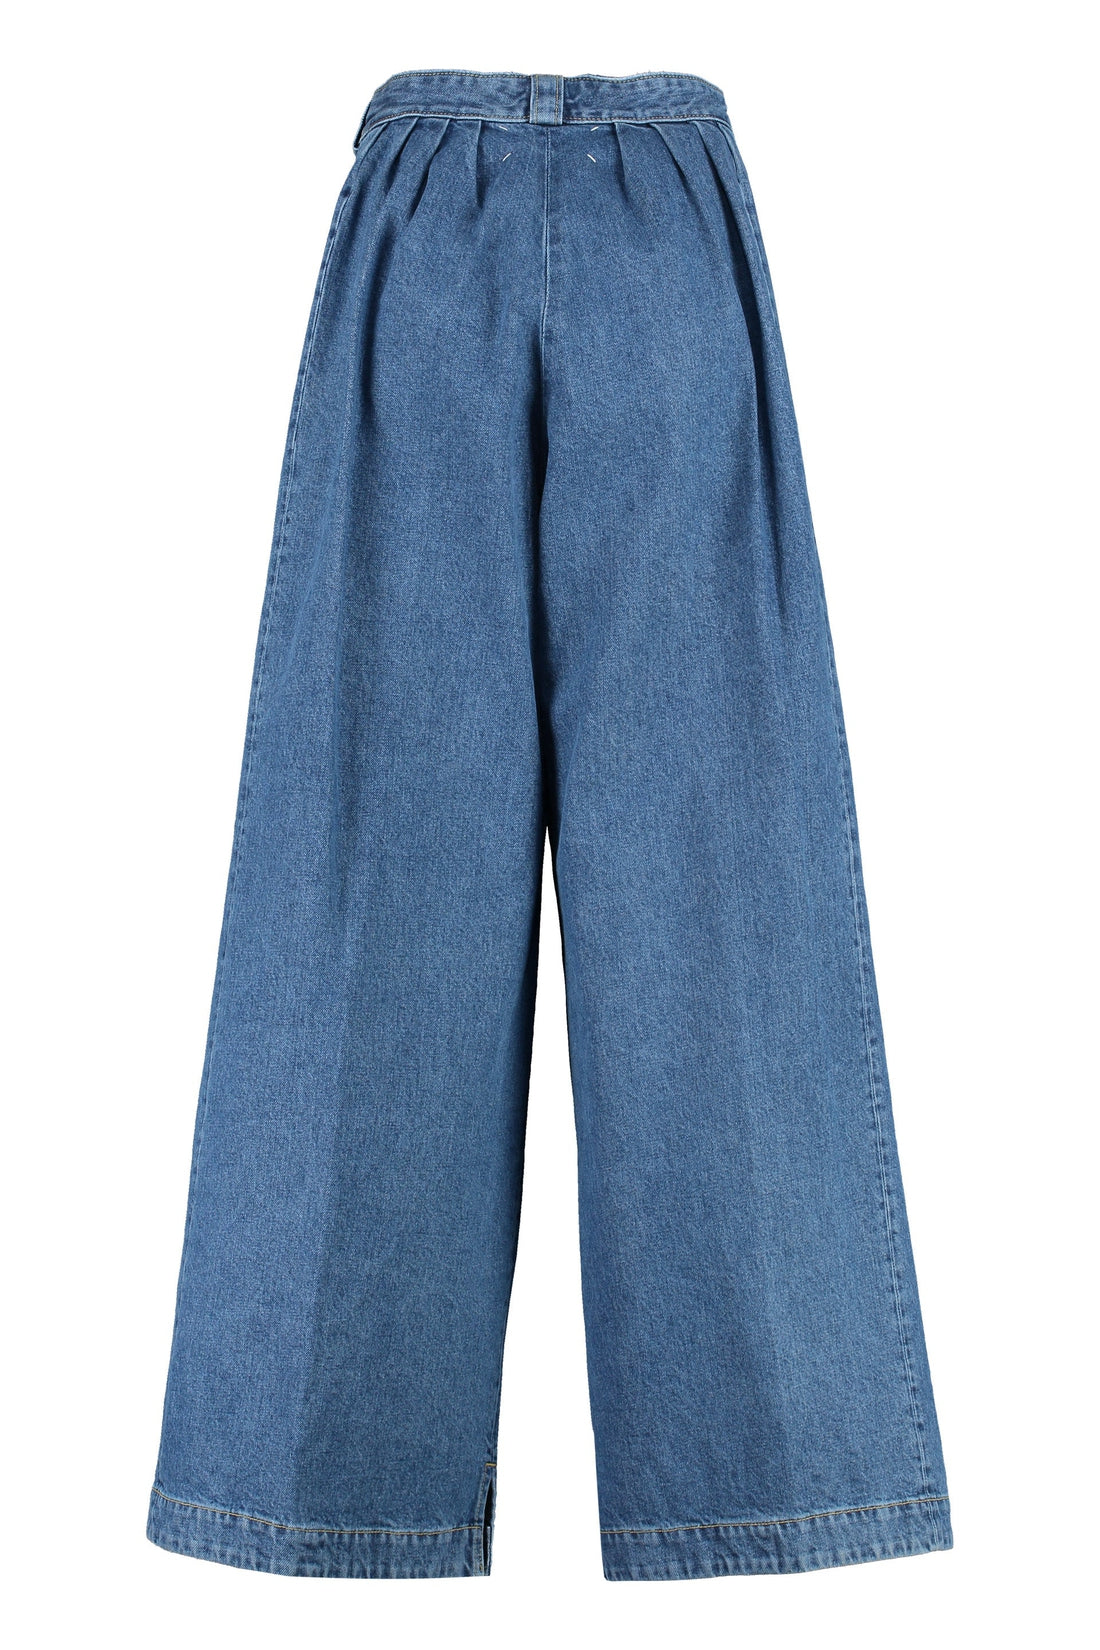 Maison Margiela-OUTLET-SALE-Wide leg jeans-ARCHIVIST